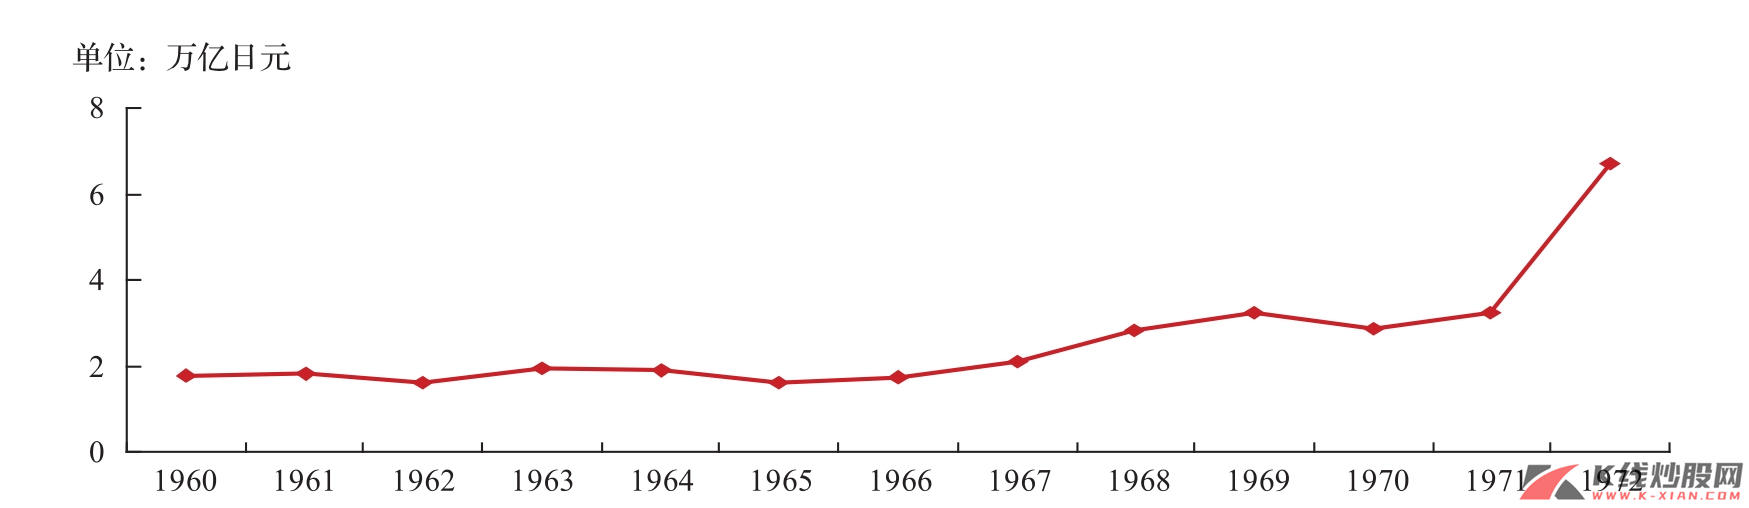  20世纪60年代日本工业企业利润增长情况